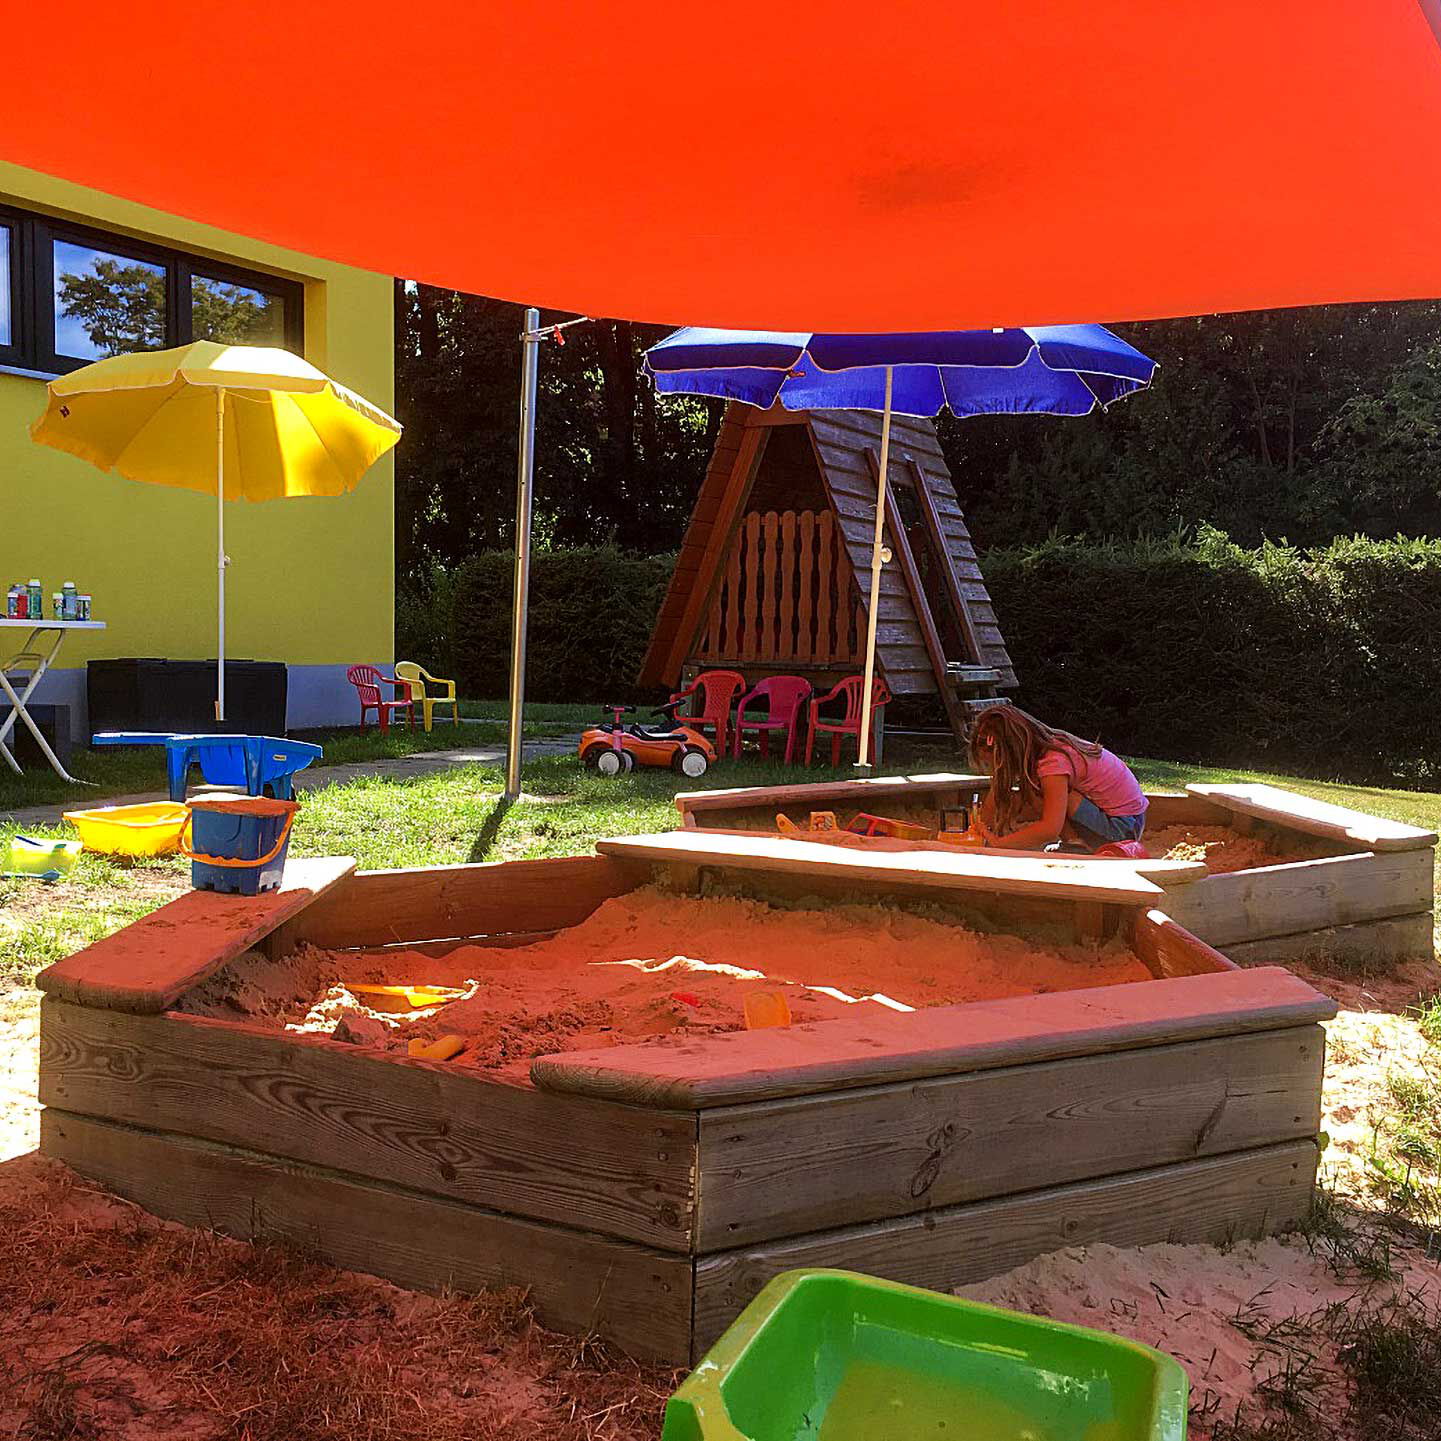 Im Außenbereich sind zwei Sandkästen mit Sonnenschutz, ein Spielhaus und Kinderspielzeuge zu sehen.